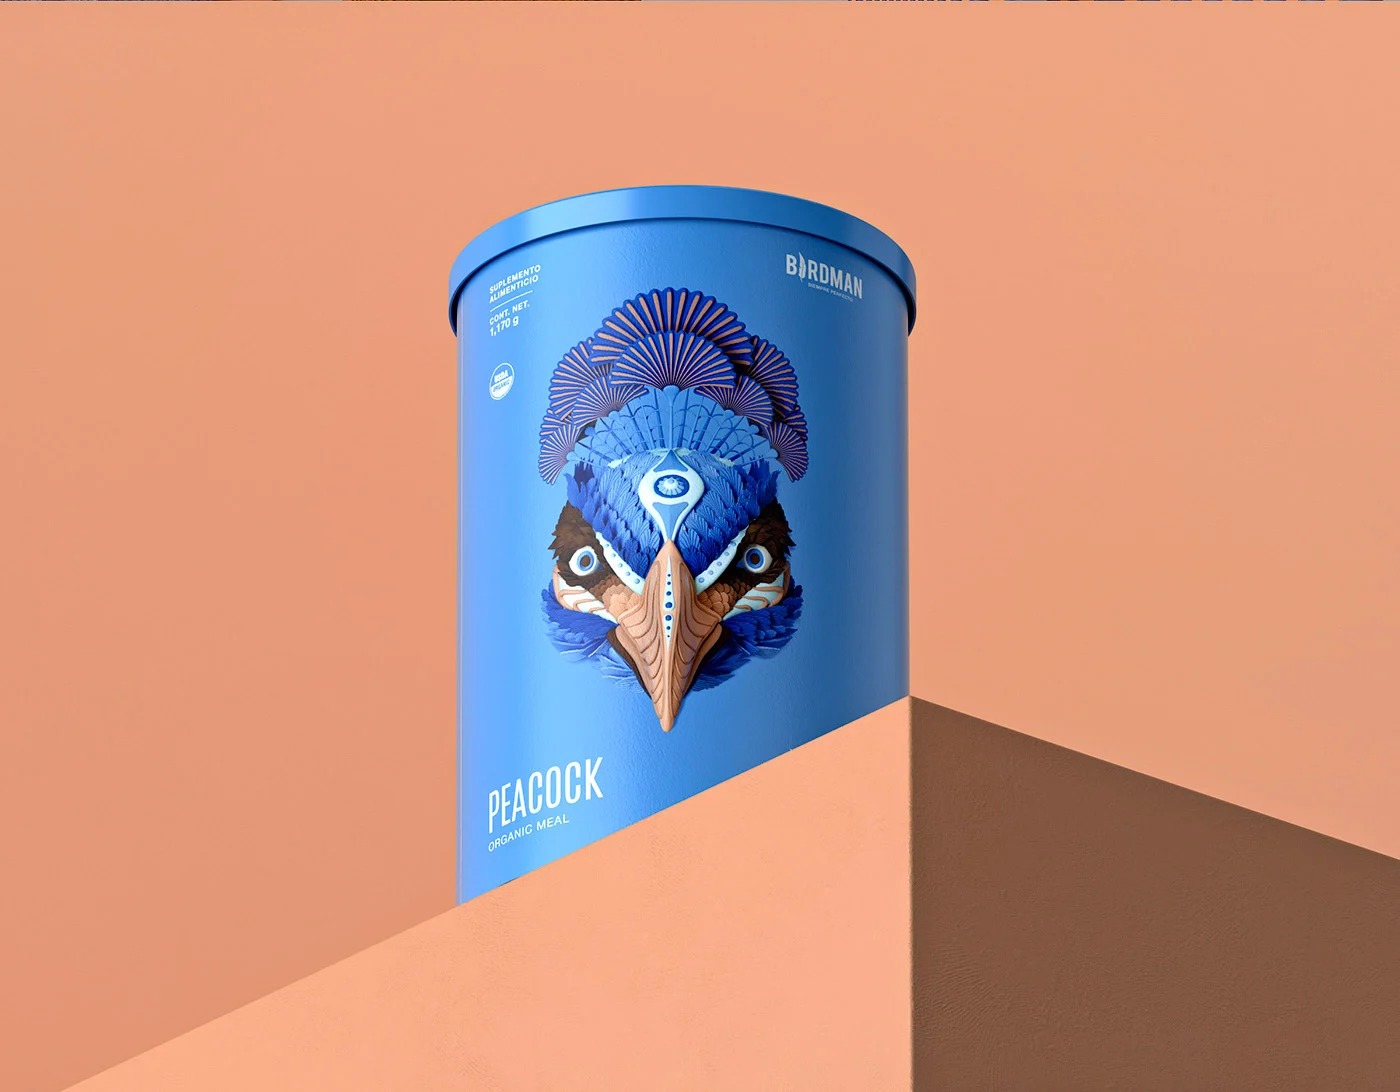 Birdman植物蛋白食物包装设计